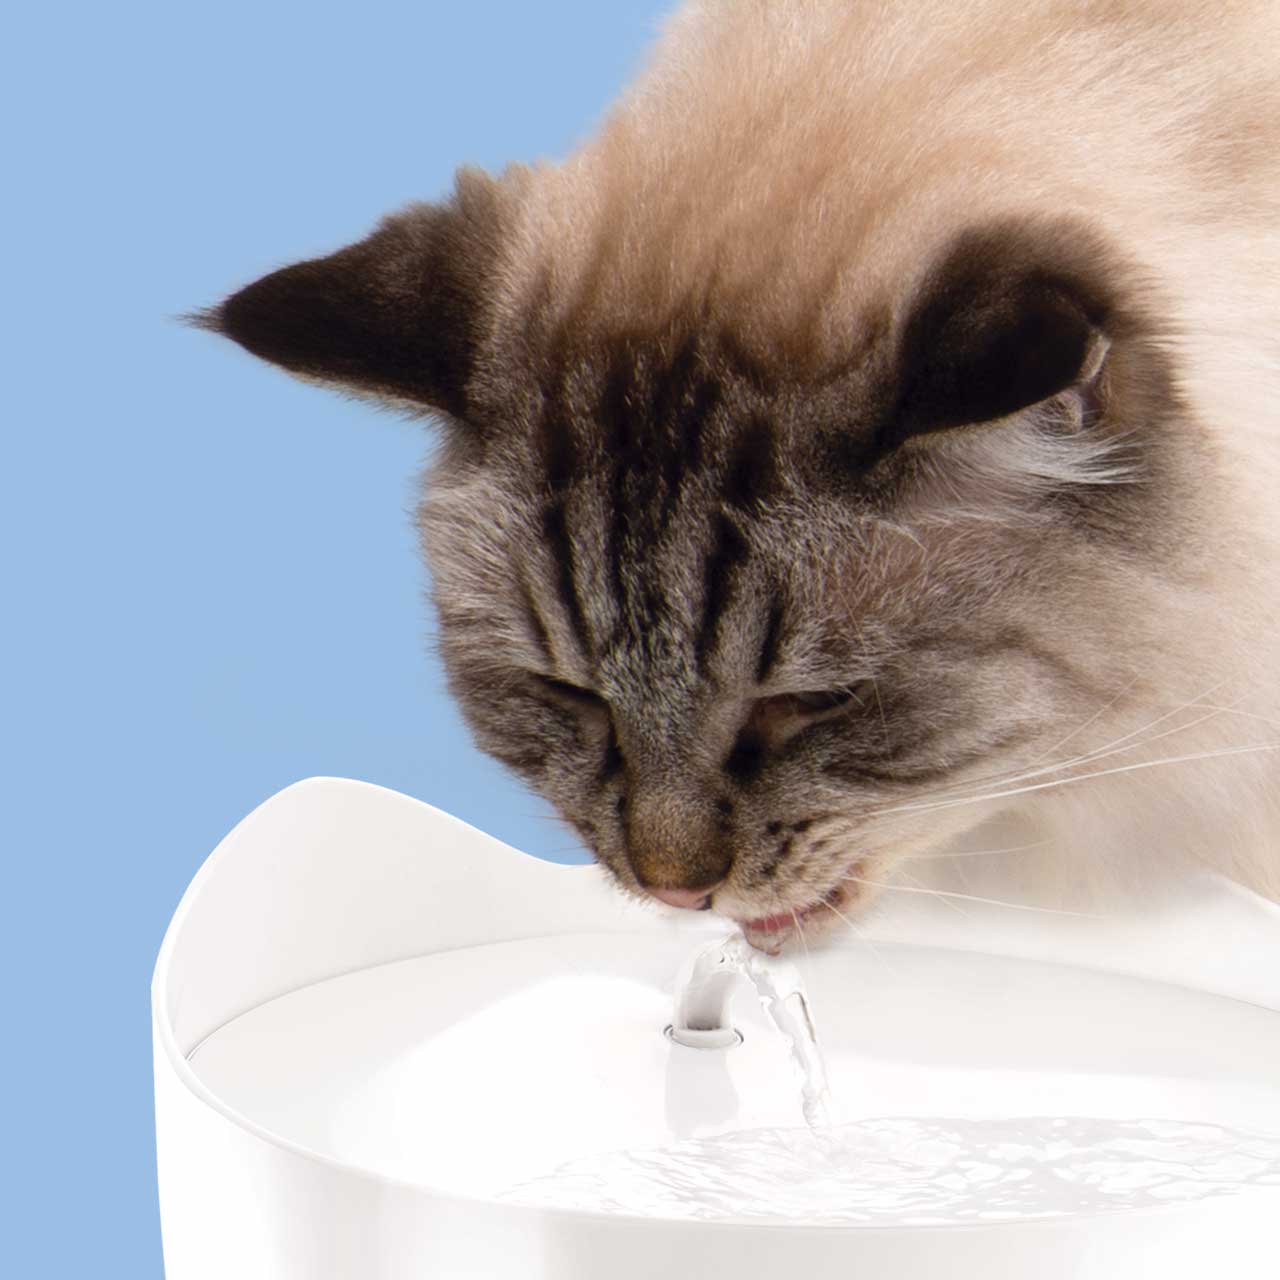 Kat drinkt van PIXI fontein in een ergonomische positie